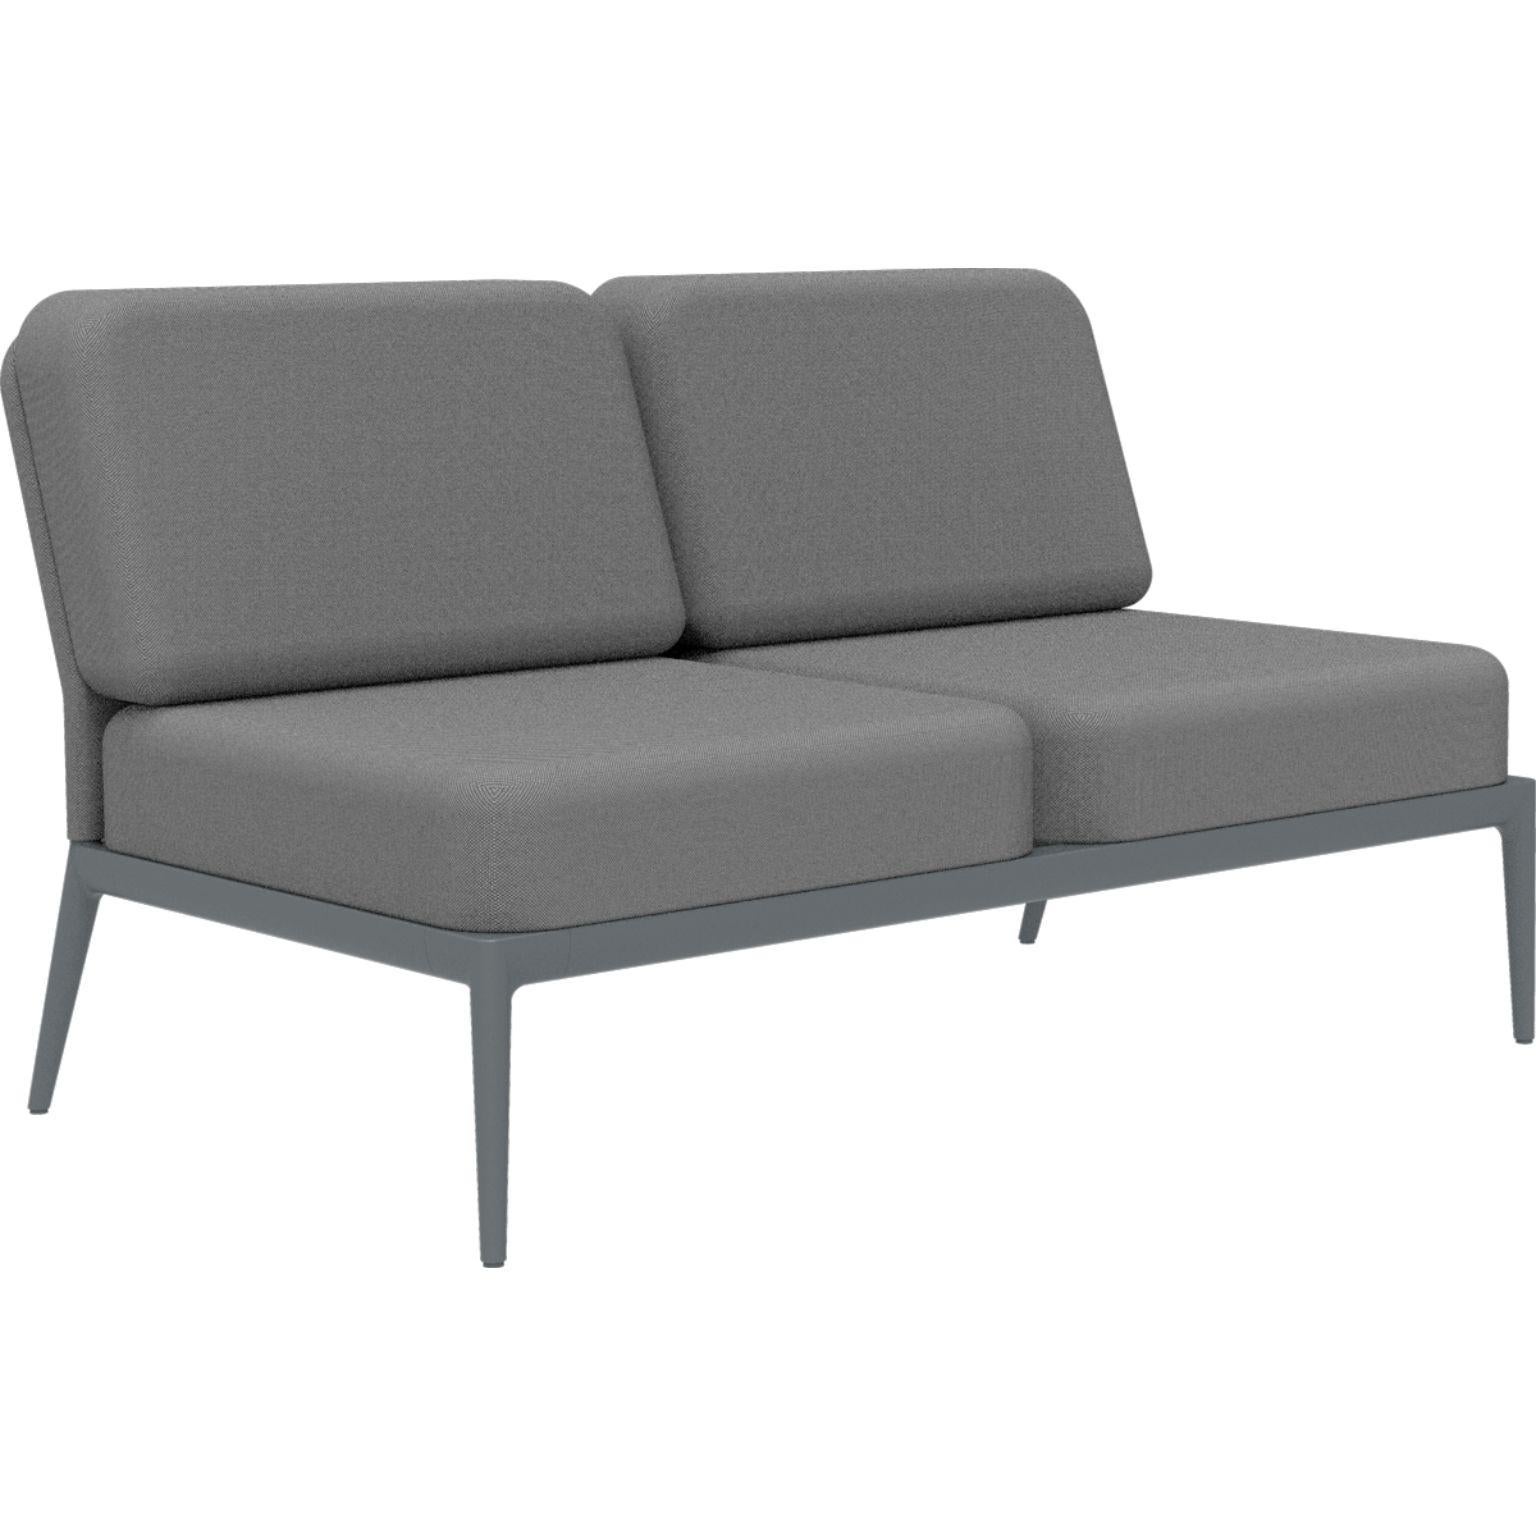 Bezug Grey Double Central modulares sofa von MOWEE
Abmessungen: T83 x B136 x H81 cm (Sitzhöhe 42 cm).
MATERIAL: Aluminium und Polstermaterial.
Gewicht: 27 kg.
Auch in verschiedenen Farben und Ausführungen erhältlich.

Eine Collection'S, die durch